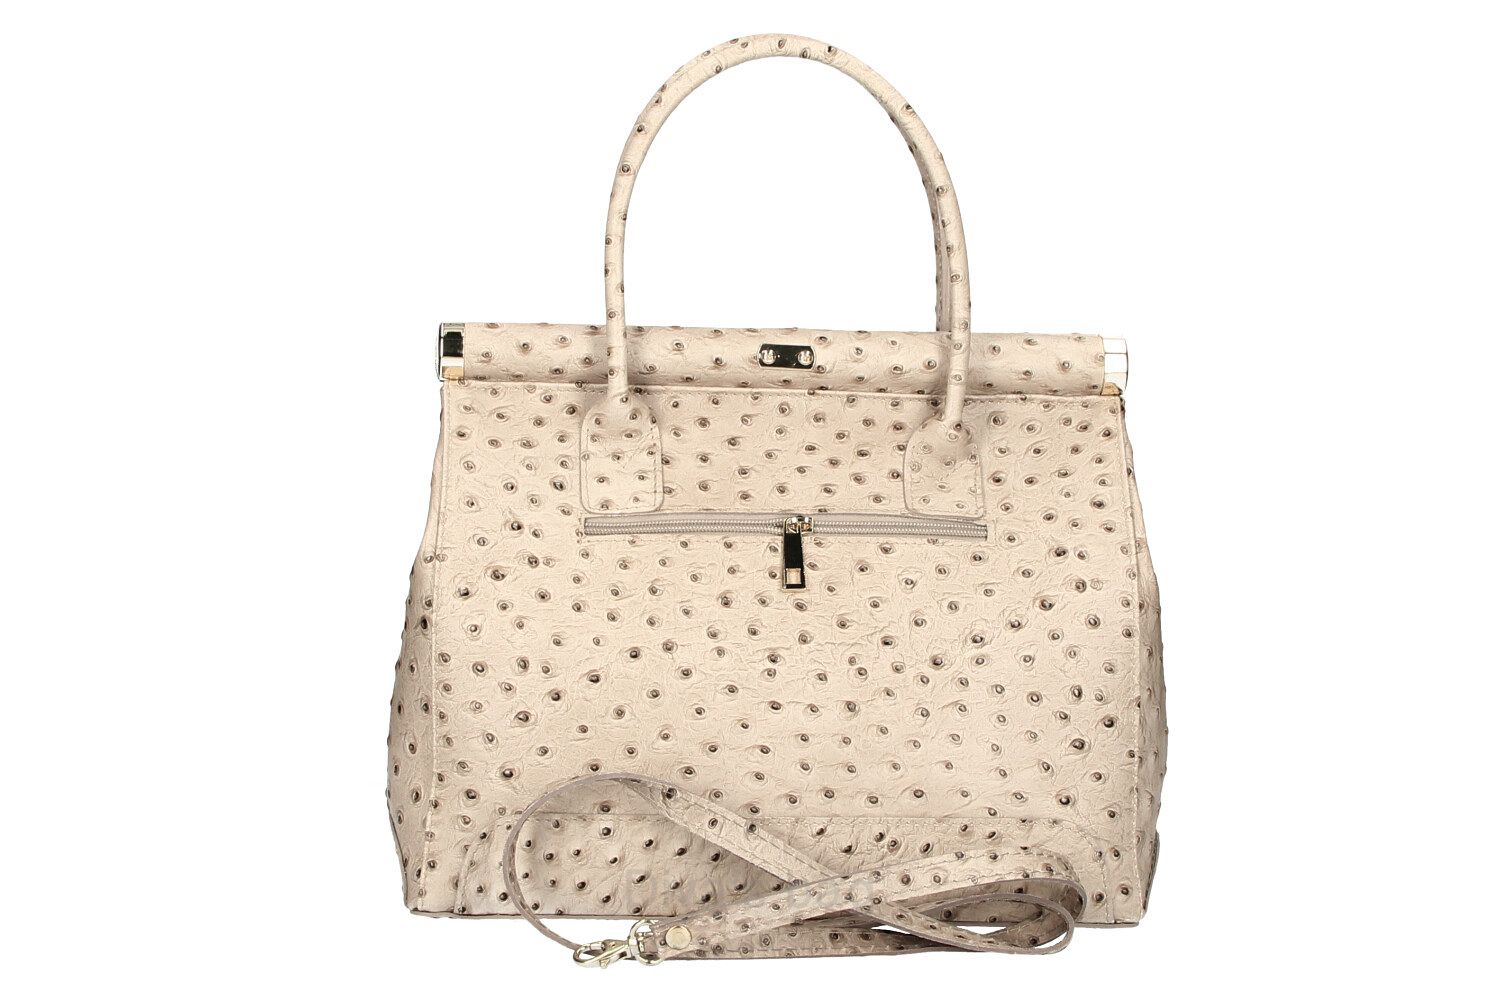 Gilda - Genuine Leather Handbag